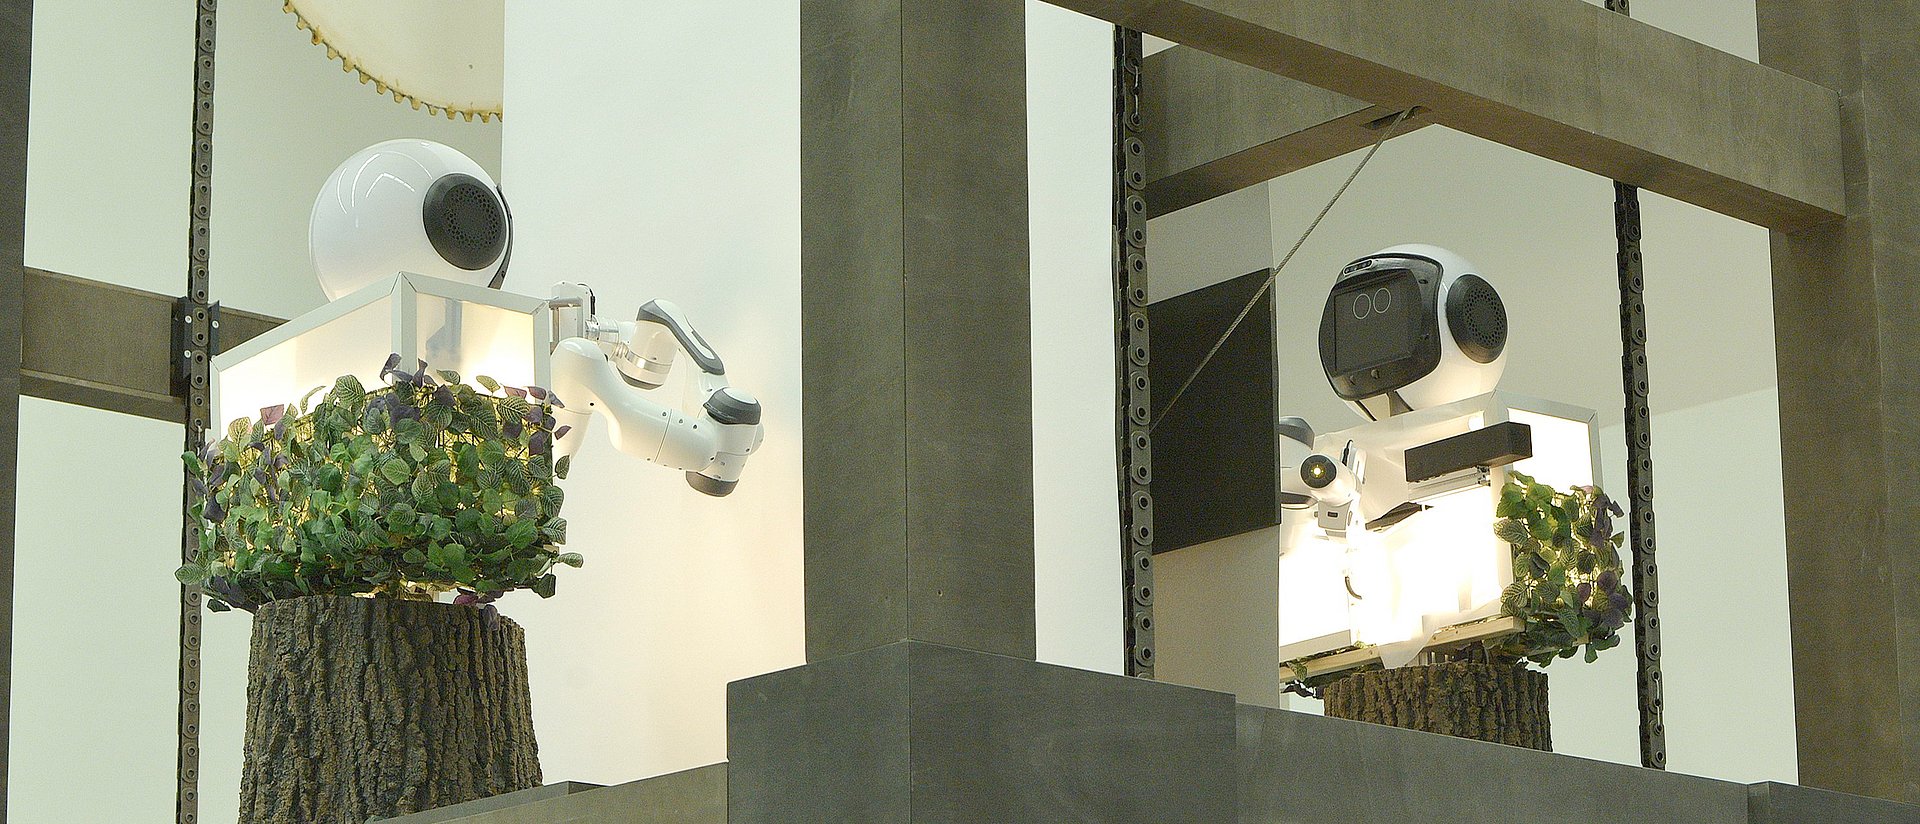 Der Roboter GARMI, bestehend aus Kopf und Rumpf, im Paternoster der Pinakothek der Moderne.